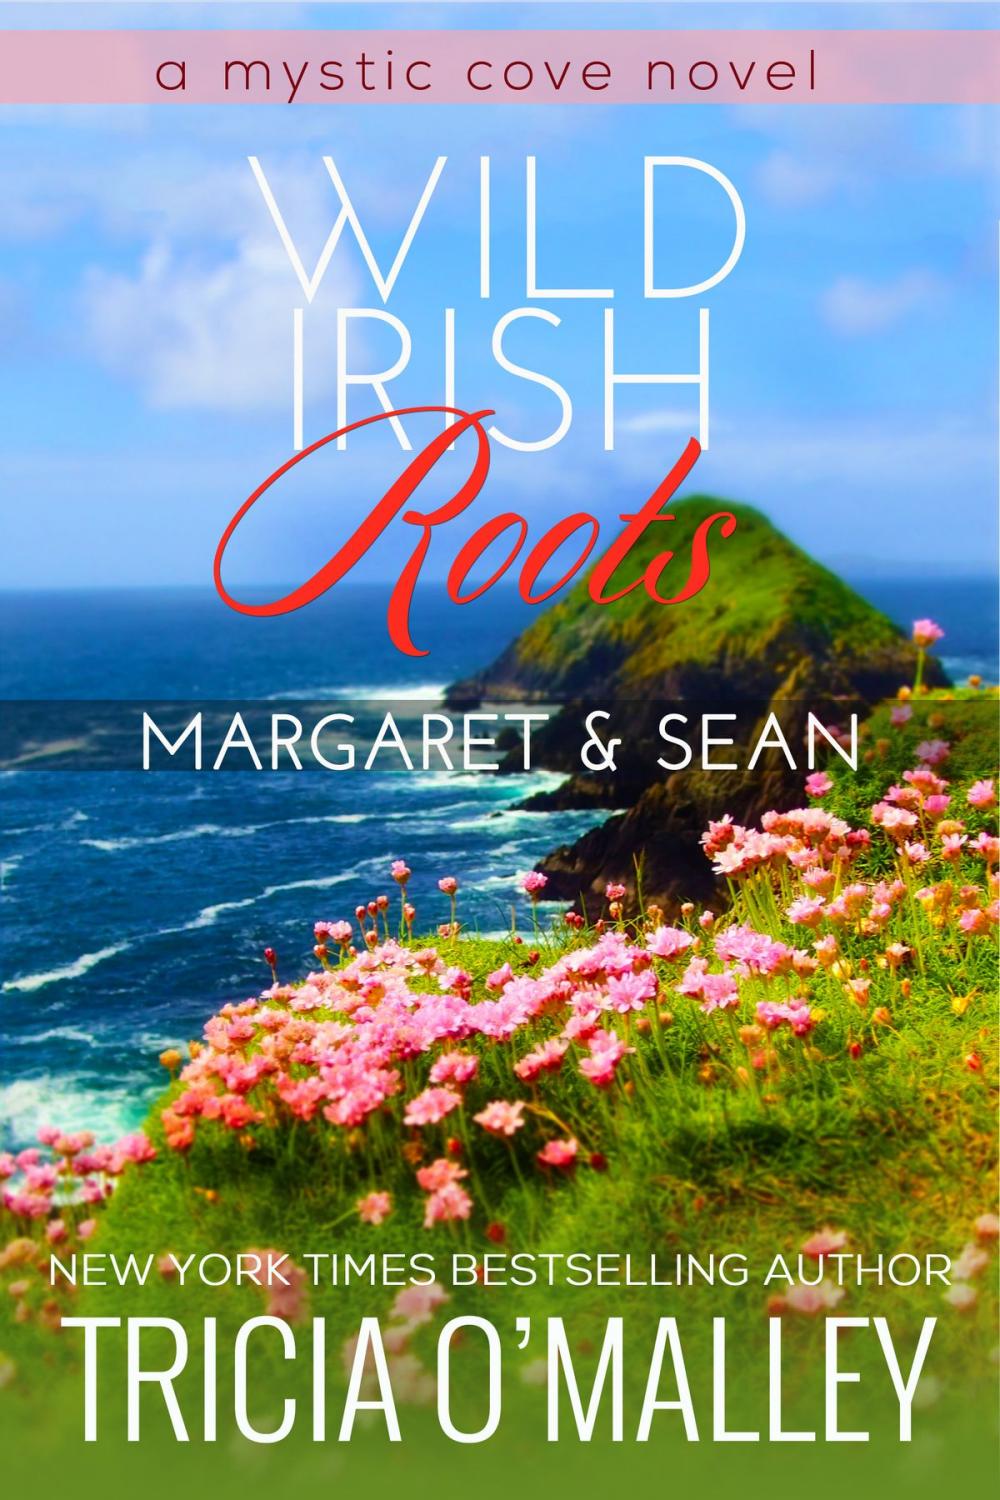 Big bigCover of Wild Irish Roots: Margaret & Sean